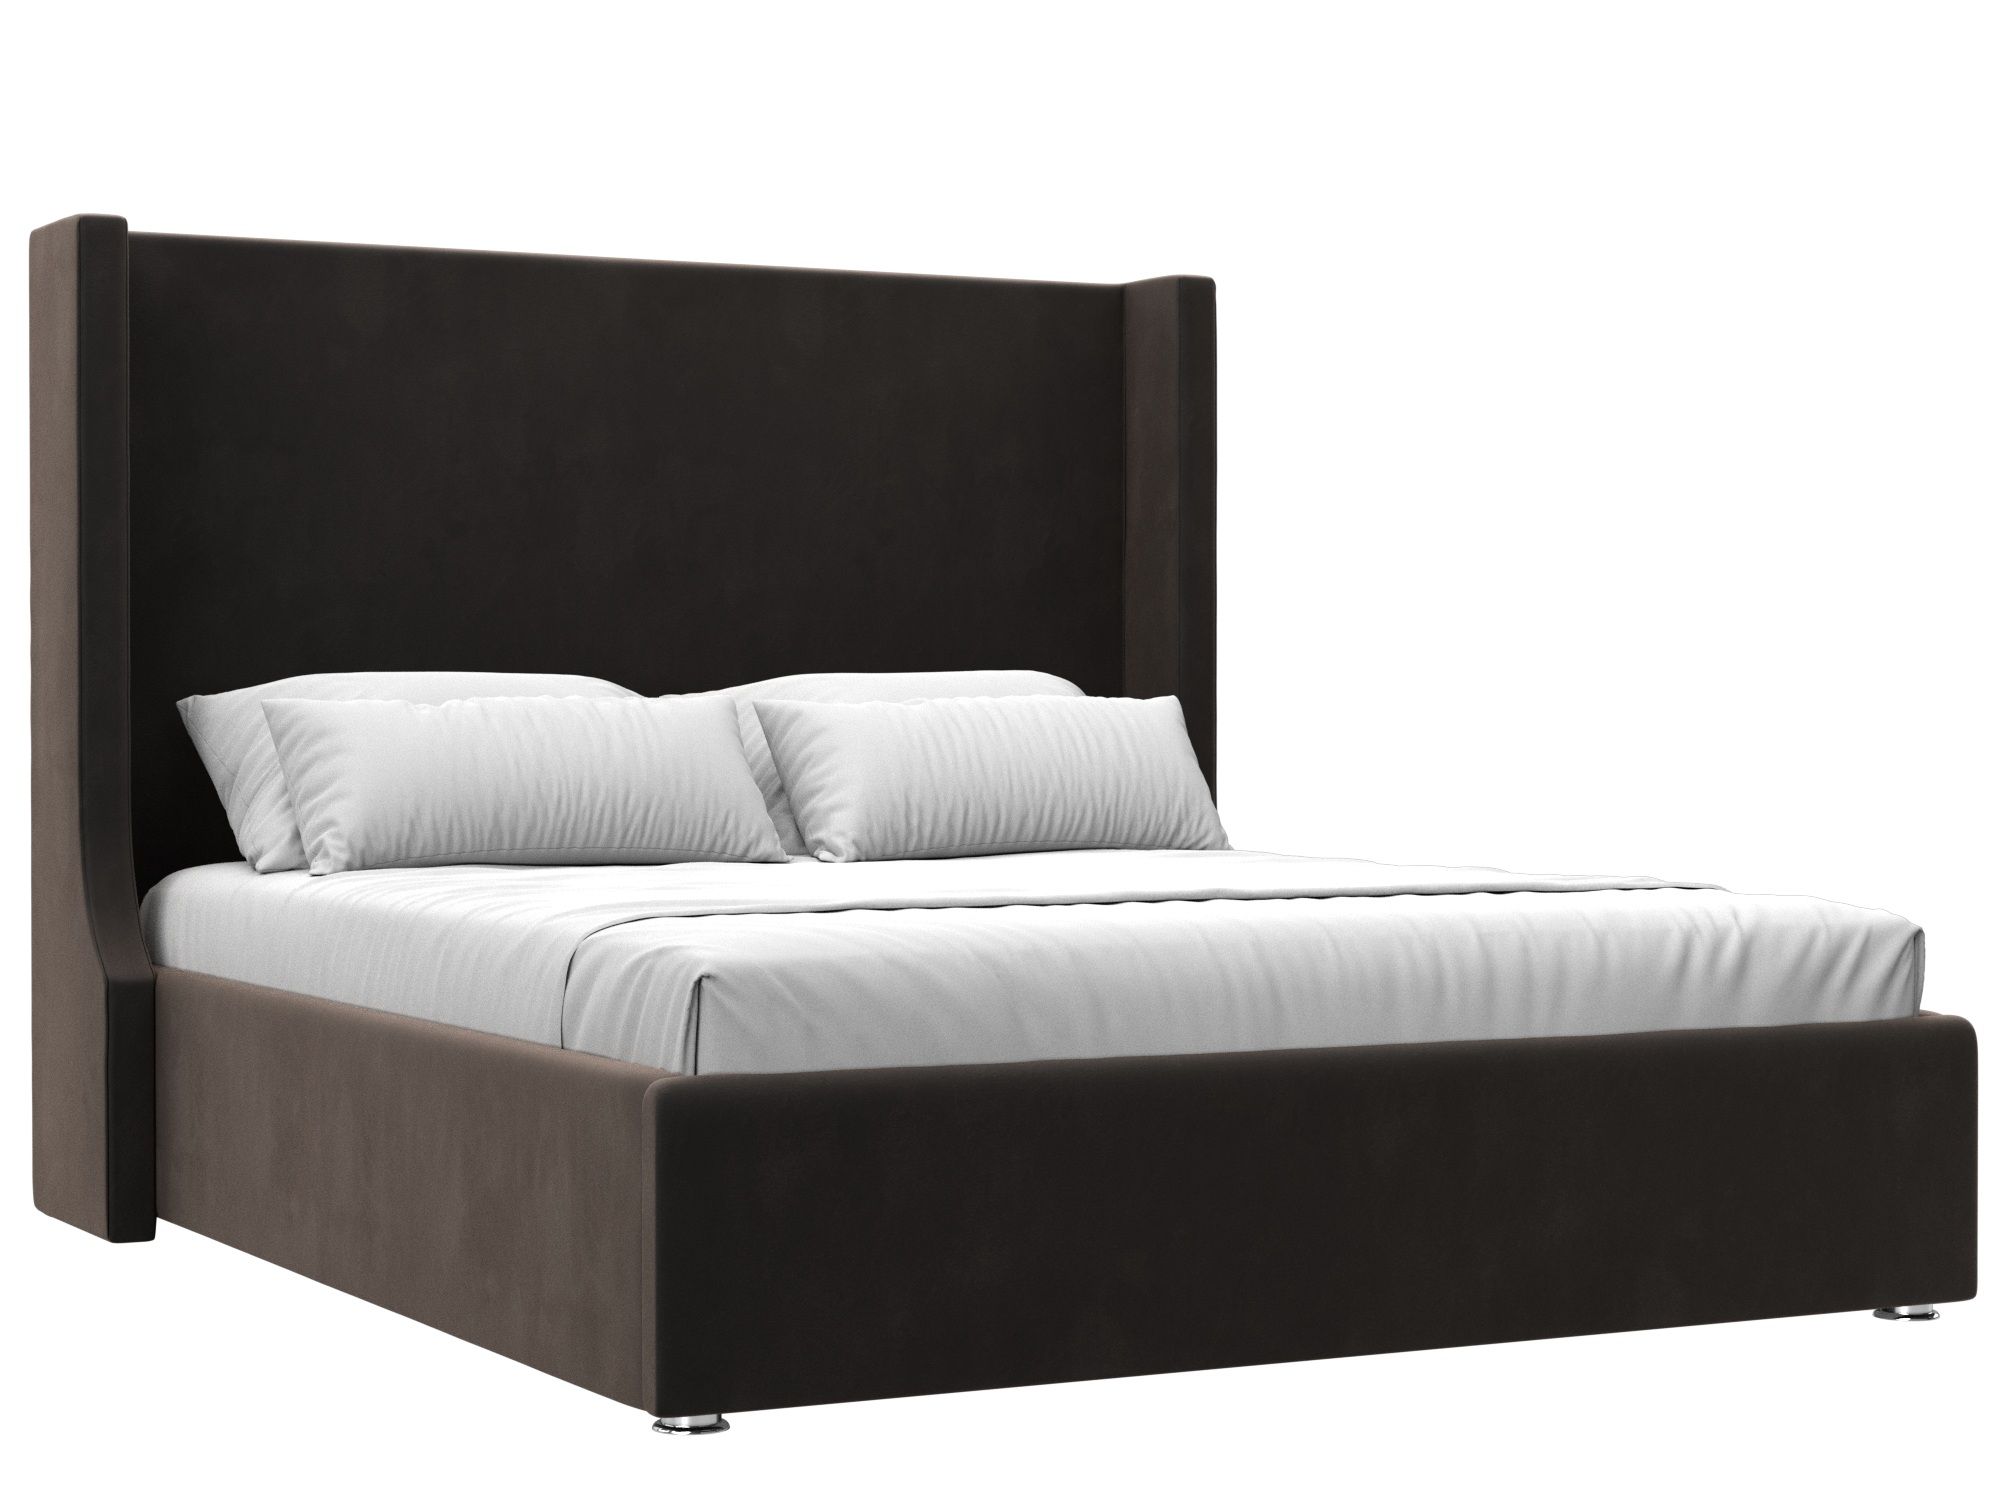 Кровать интерьерная Ларго 160 (коричневый)